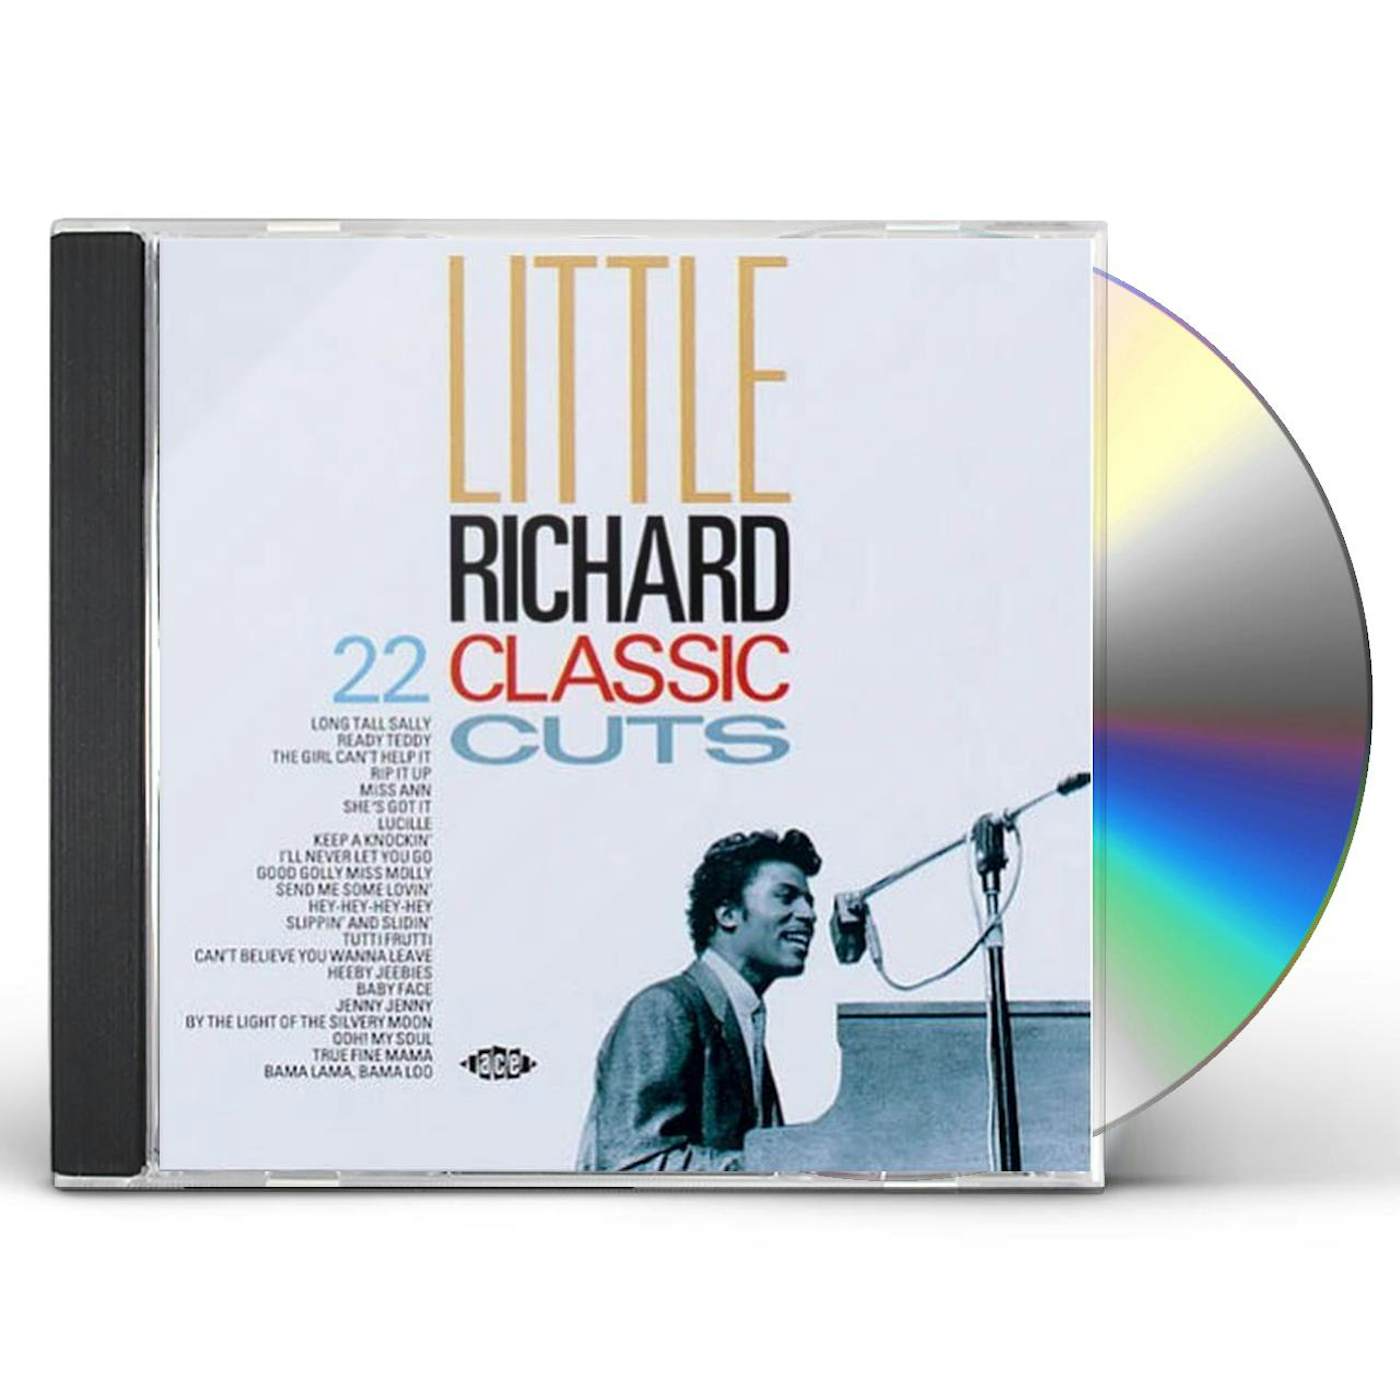 Little Richard 22 CLASSIC CUTS CD